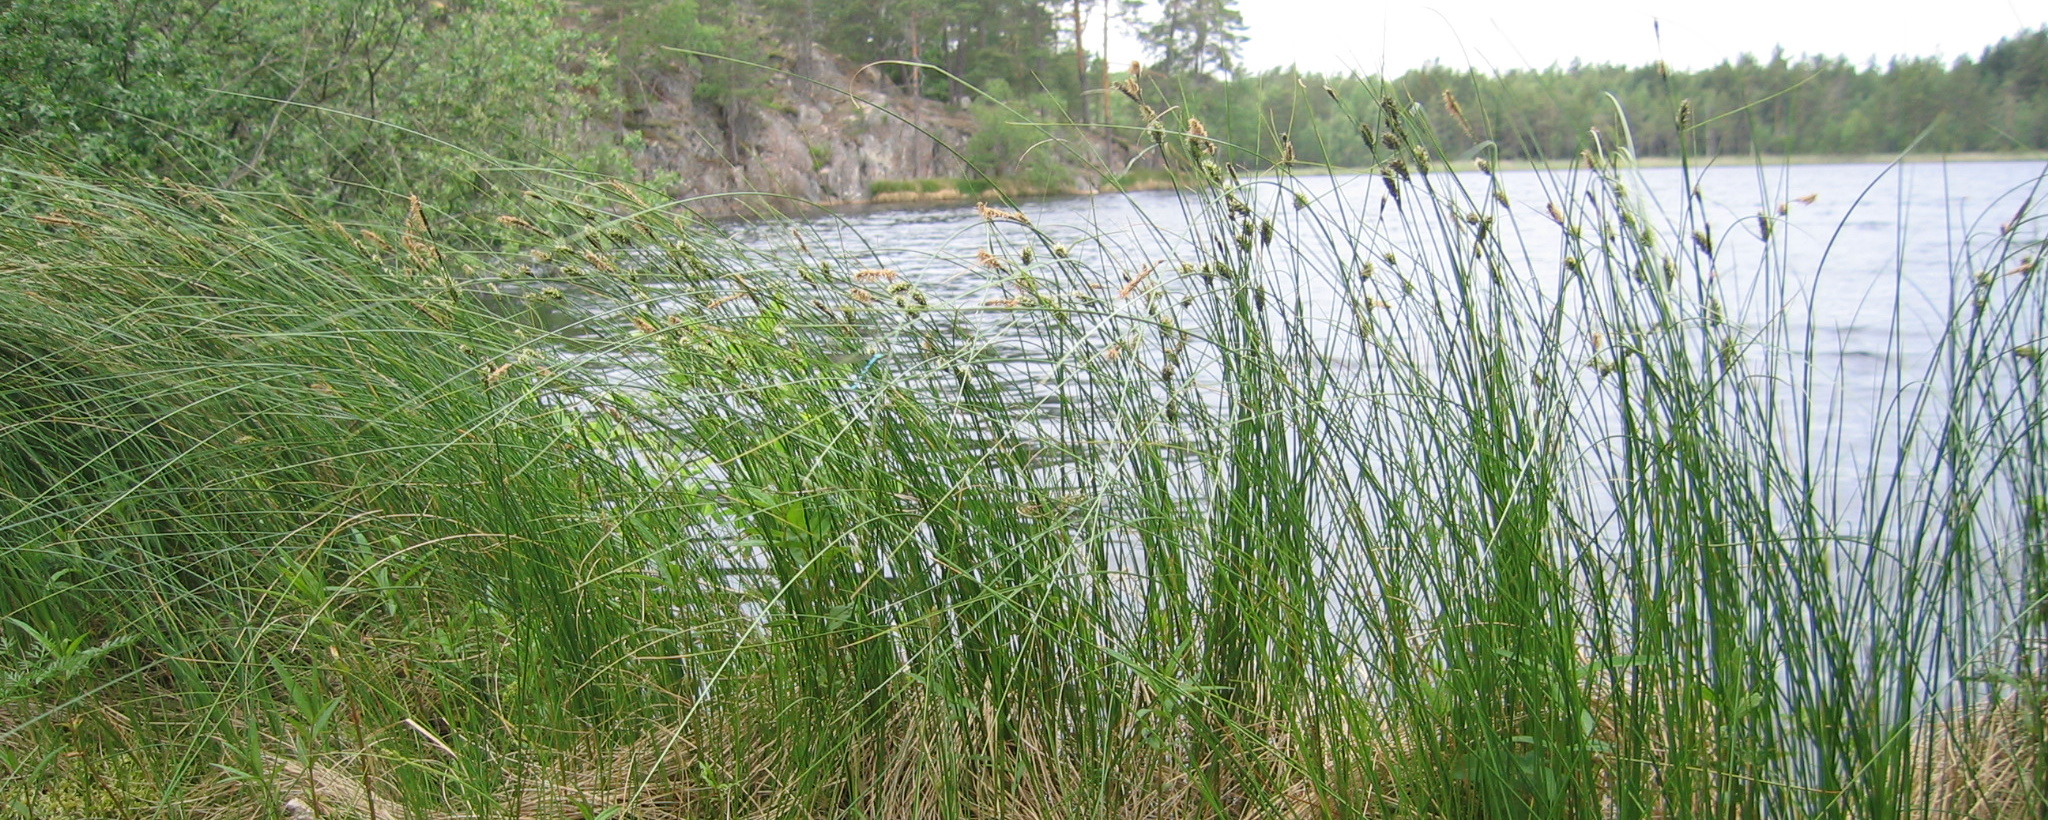 Högt gräs vid vattnet